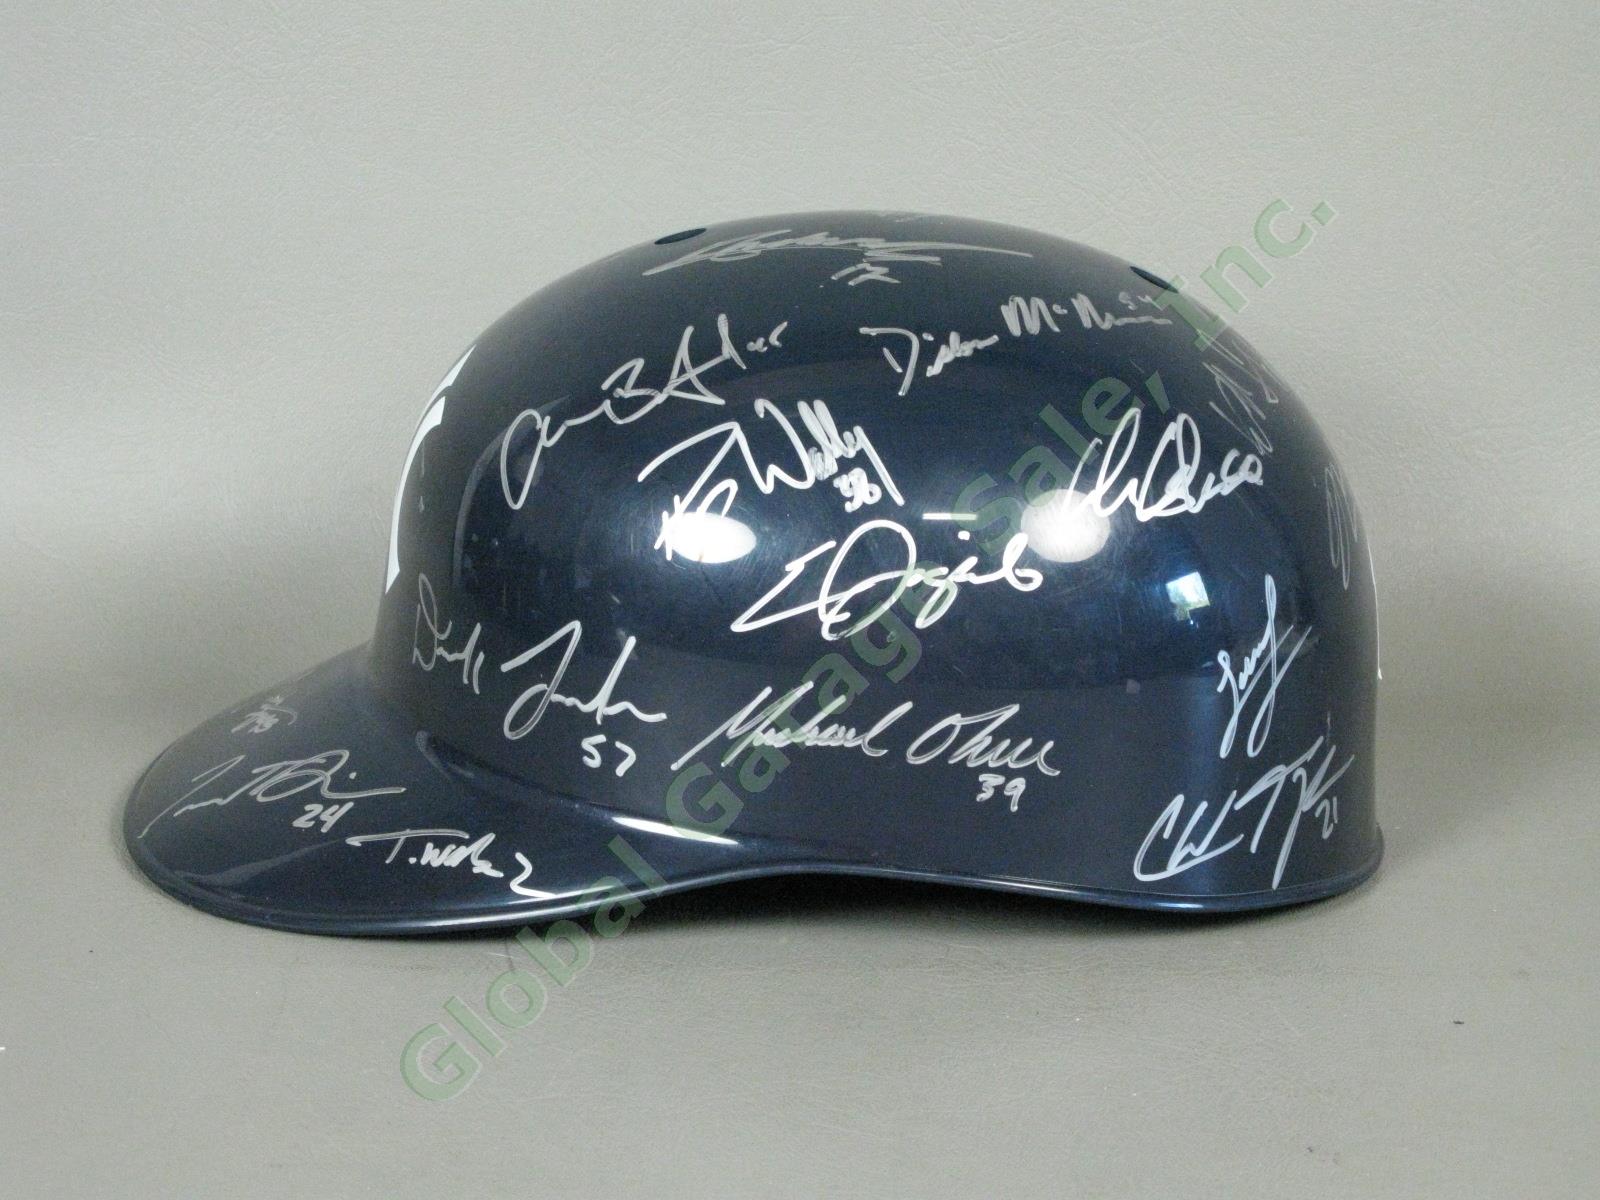 2013 Staten Island Yankees Team Signed Baseball Helmet MiLB MLB NYPL New York NR 3